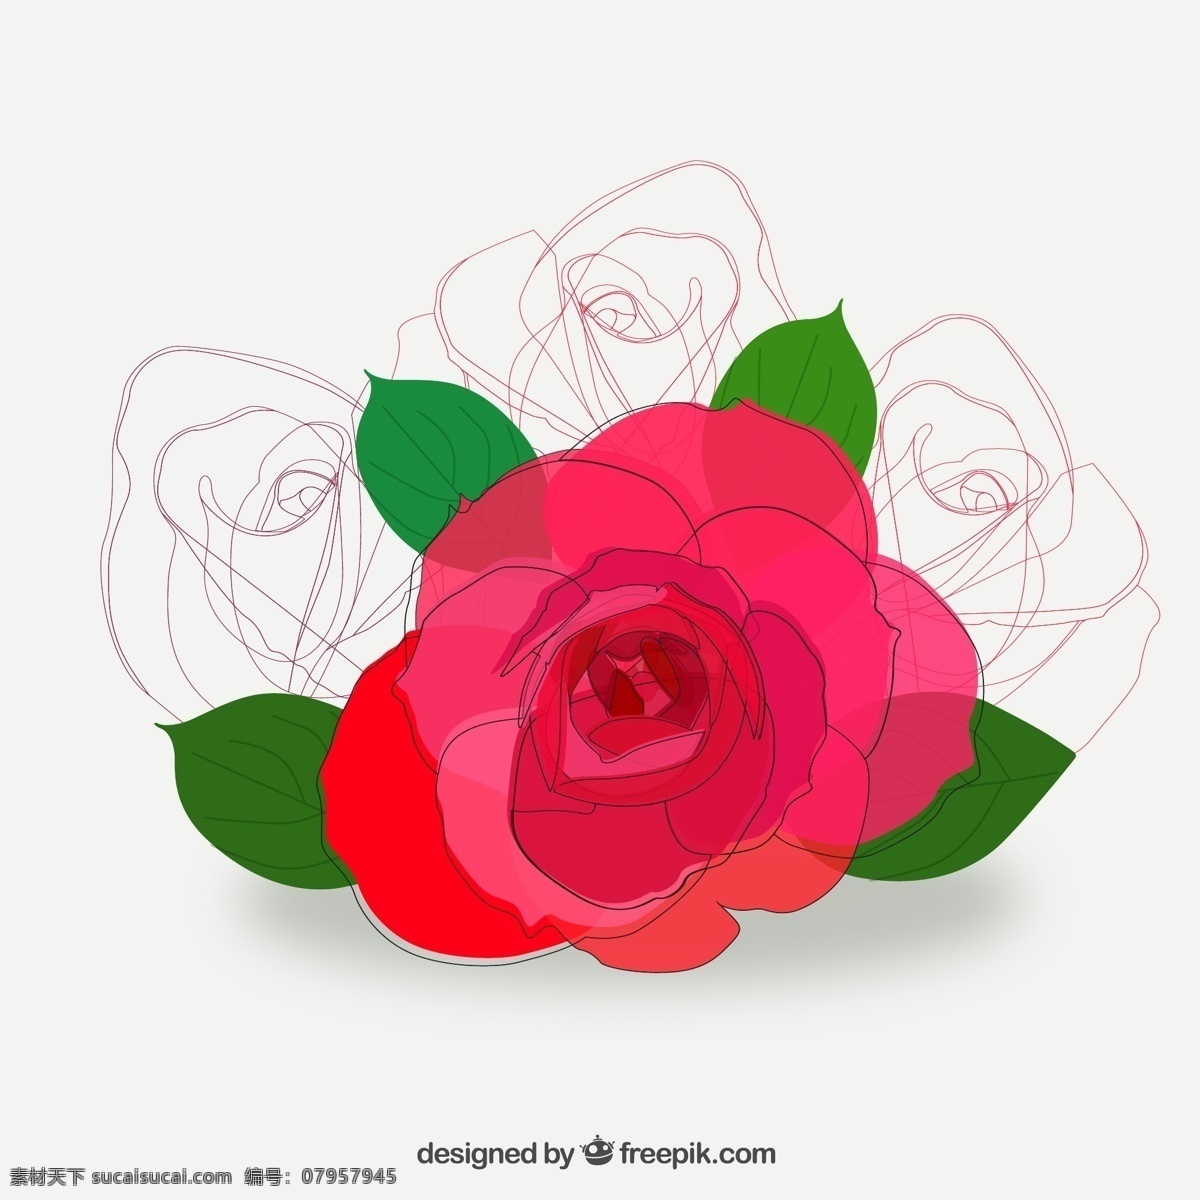 彩绘 红色 玫瑰花 矢量 线条 红玫瑰 矢量图 矢量素材